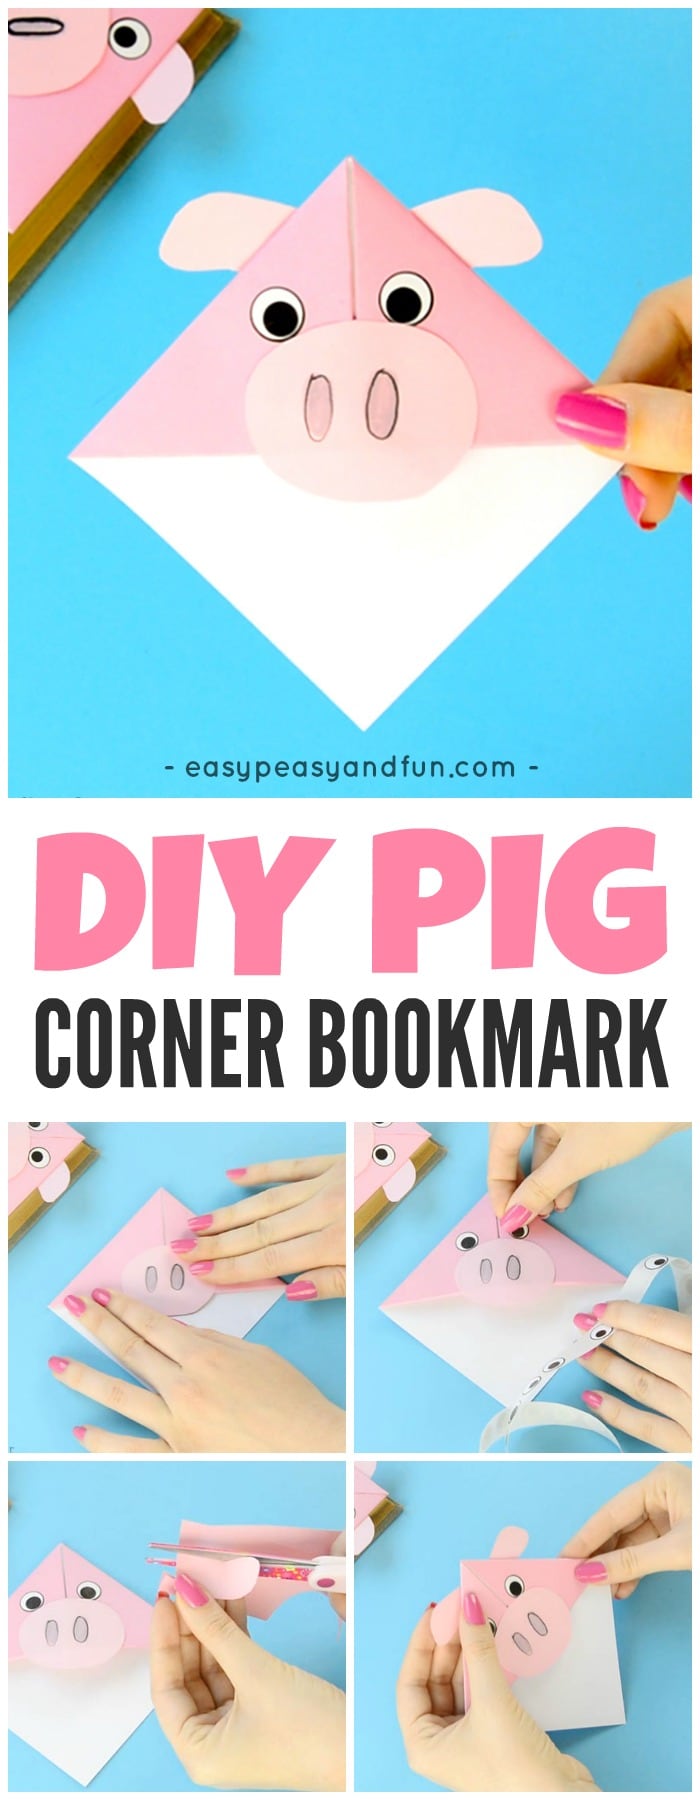 DIY Pig Corner Bookmarks Origami for Kids to Make